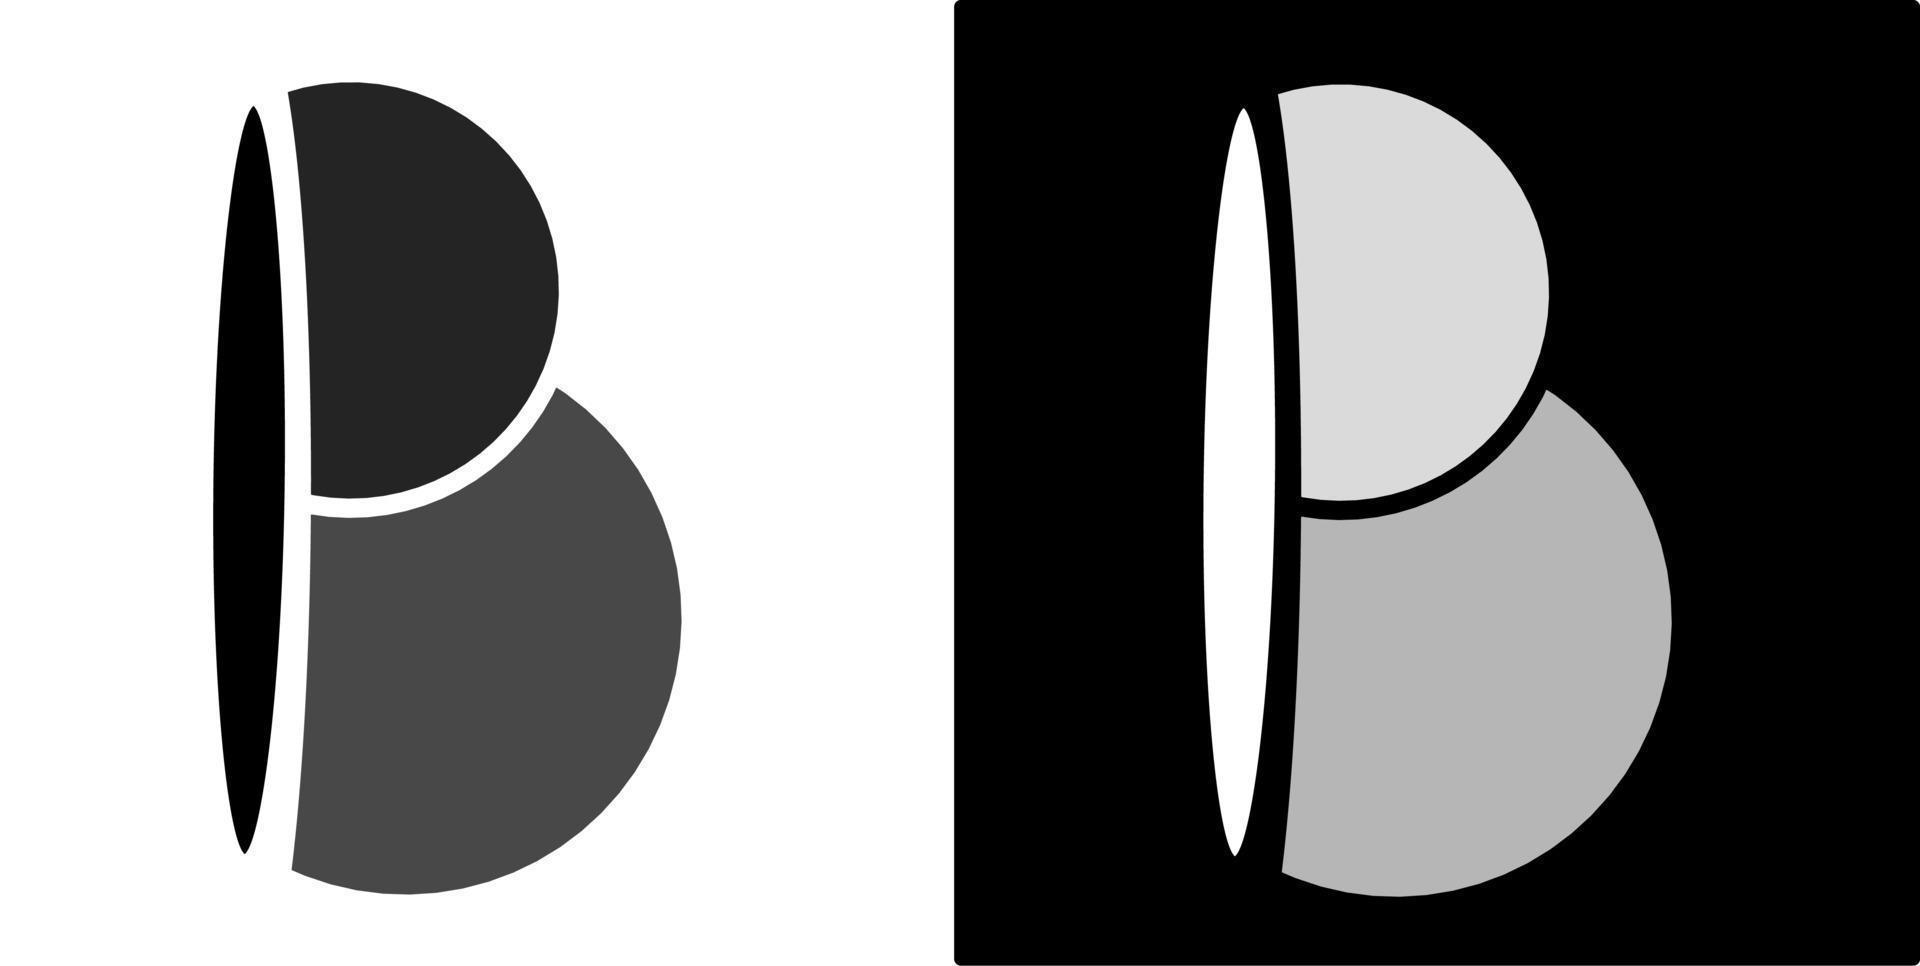 ilustração vetorial da letra b, isolada no design de fundo preto e branco vetor